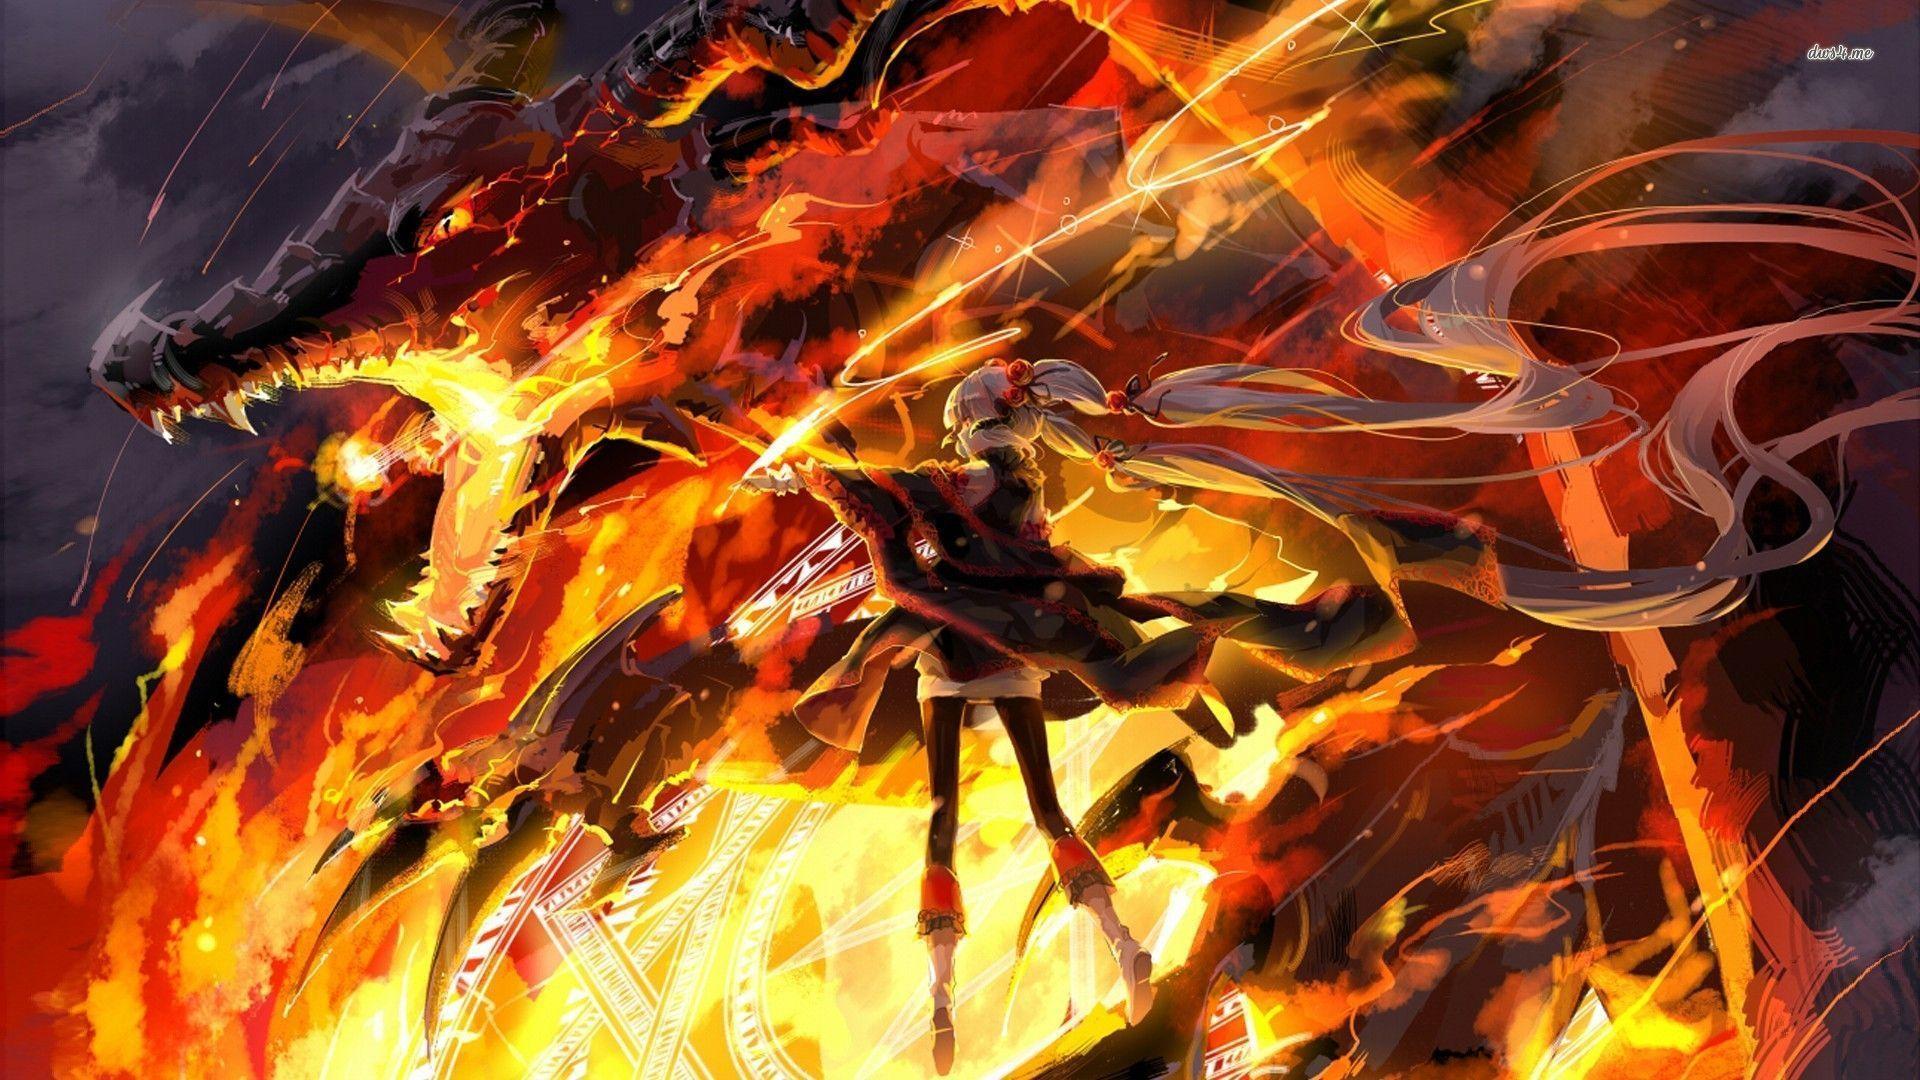 Download Demon Slayer Renguko Fire Pfp Wallpaper | Wallpapers.com